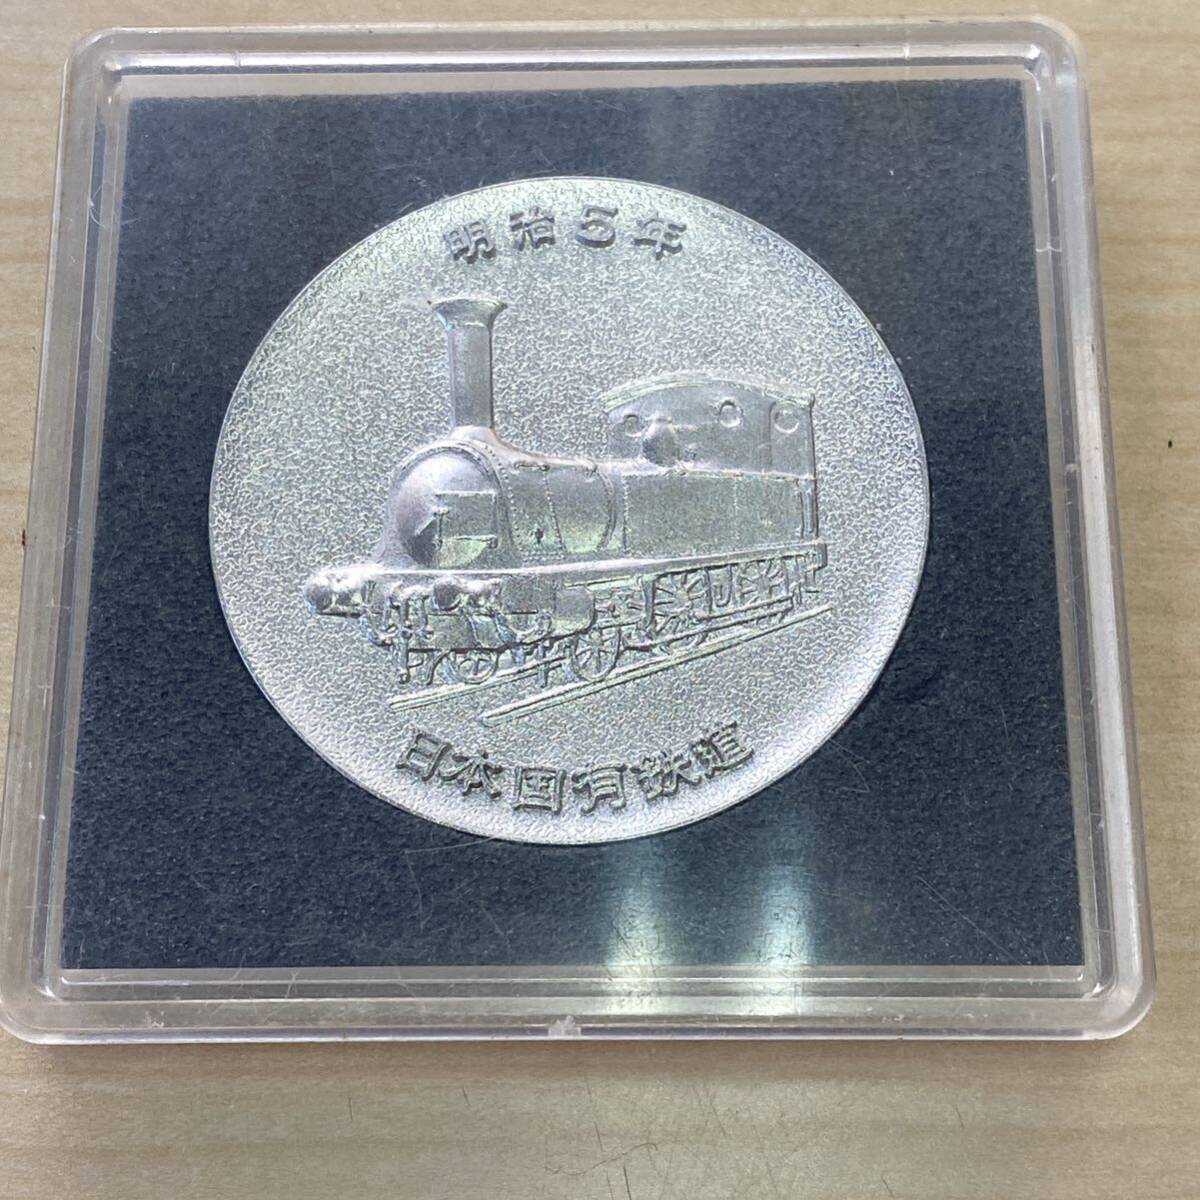 【TS0427】 1972年 鉄道100年 記念メダル 日本国有鉄道 明治5年 シルバーカラー 記念品 ケース付き 汚れあり キズありの画像2